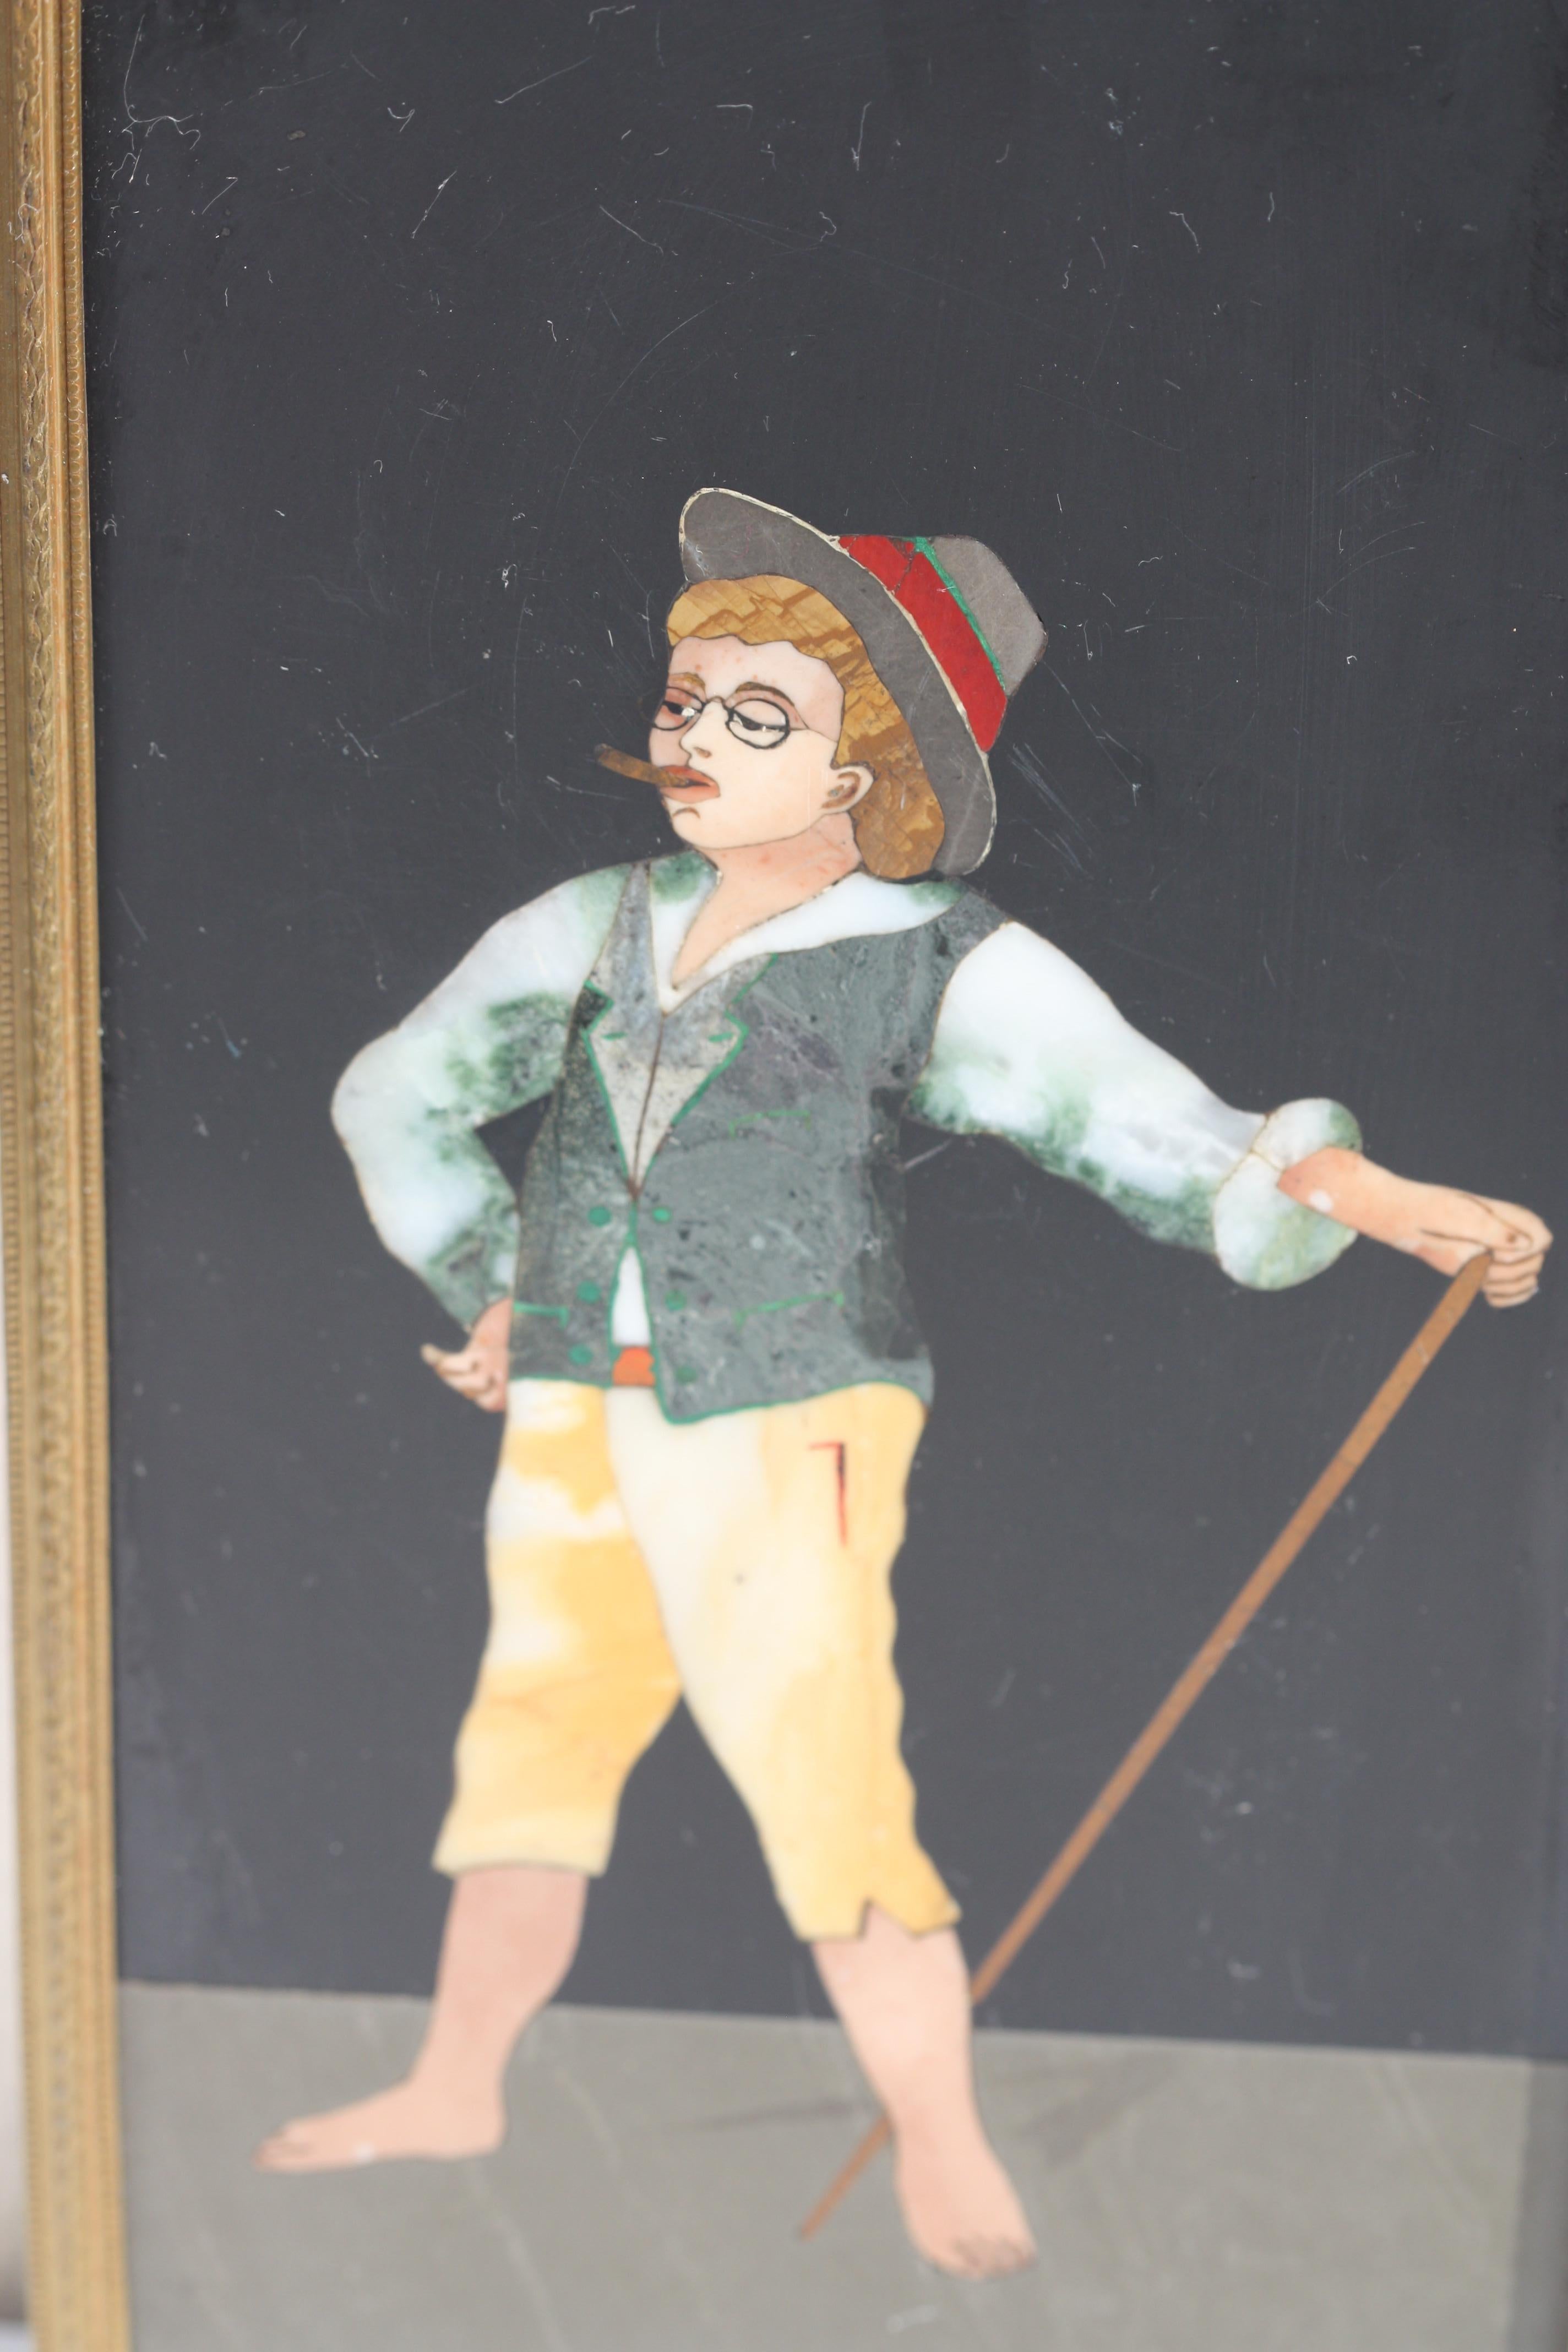 Marmortafel mit Pietra-dura-Einlage
Italienisch, 20. Jahrhundert
Mit eingeschnittener 3110/220S. 
Rechteckige Form, die einen kleinen Jungen darstellt, der erwachsen spielt. 
Maße: 9.25 in. by 4.75 in. (23,49 cm. x 12,06 cm.).